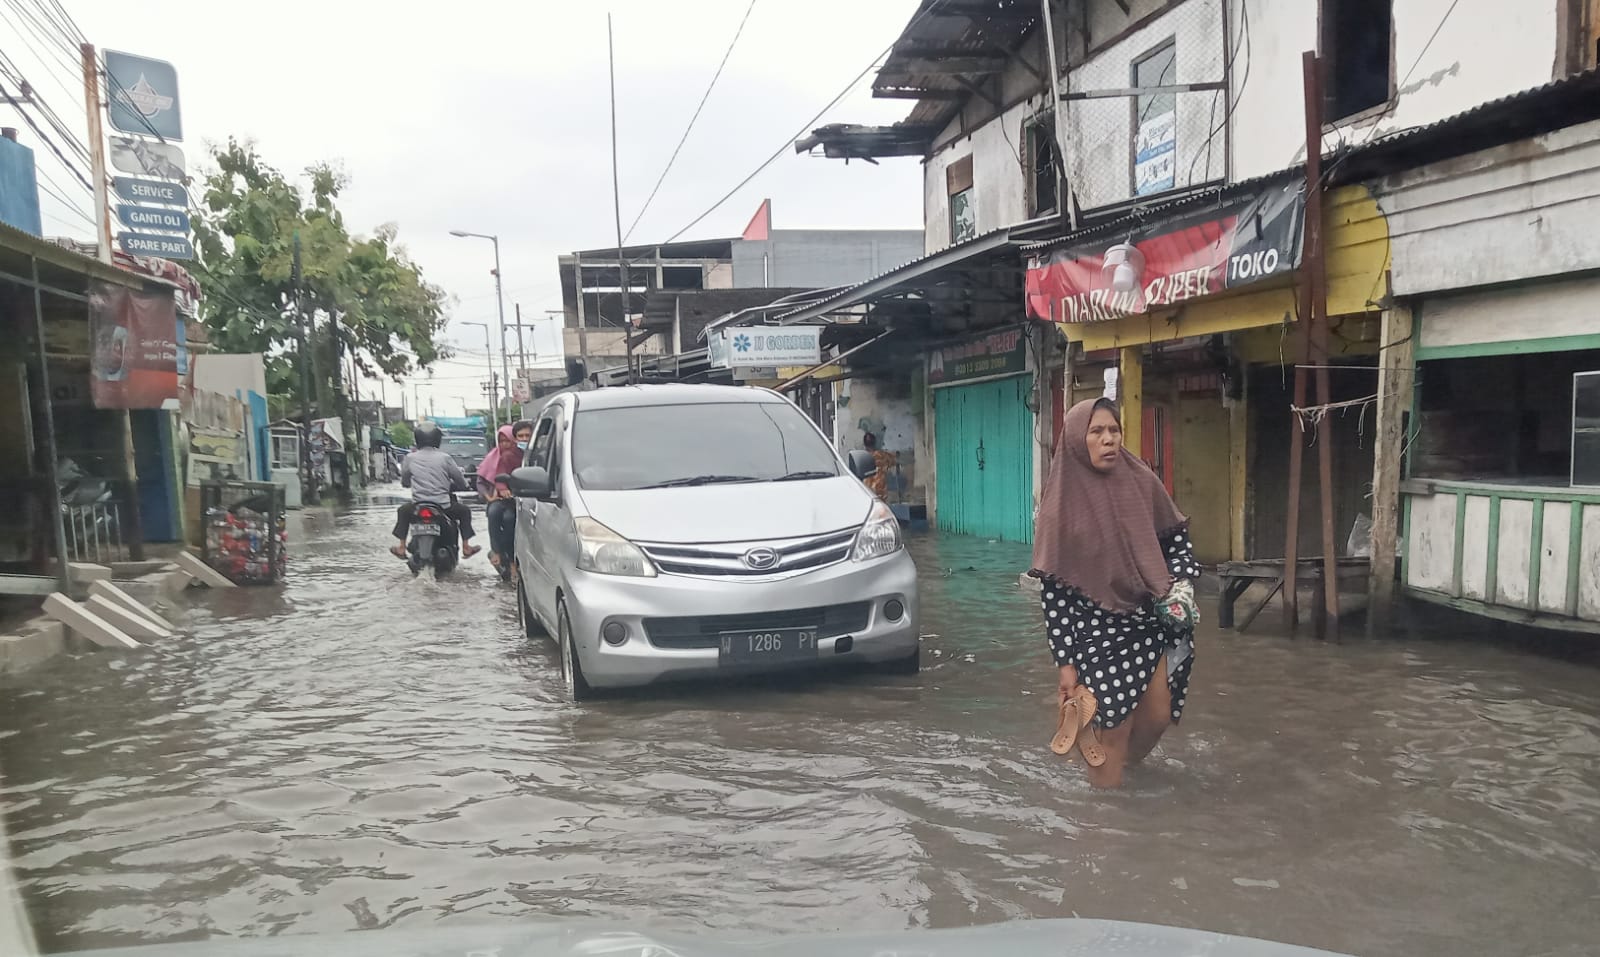 Pasar Wadungasri Jalan Kundi, Waru, Sidoarjo banjir setinggi betis orang dewasa, Kamis (13/4/2023) pagi. Banjir itu terjadi sejak sehari sebelumnya (12/4) setelah hujan deras mengguyur kawasan tersebut. (ham)